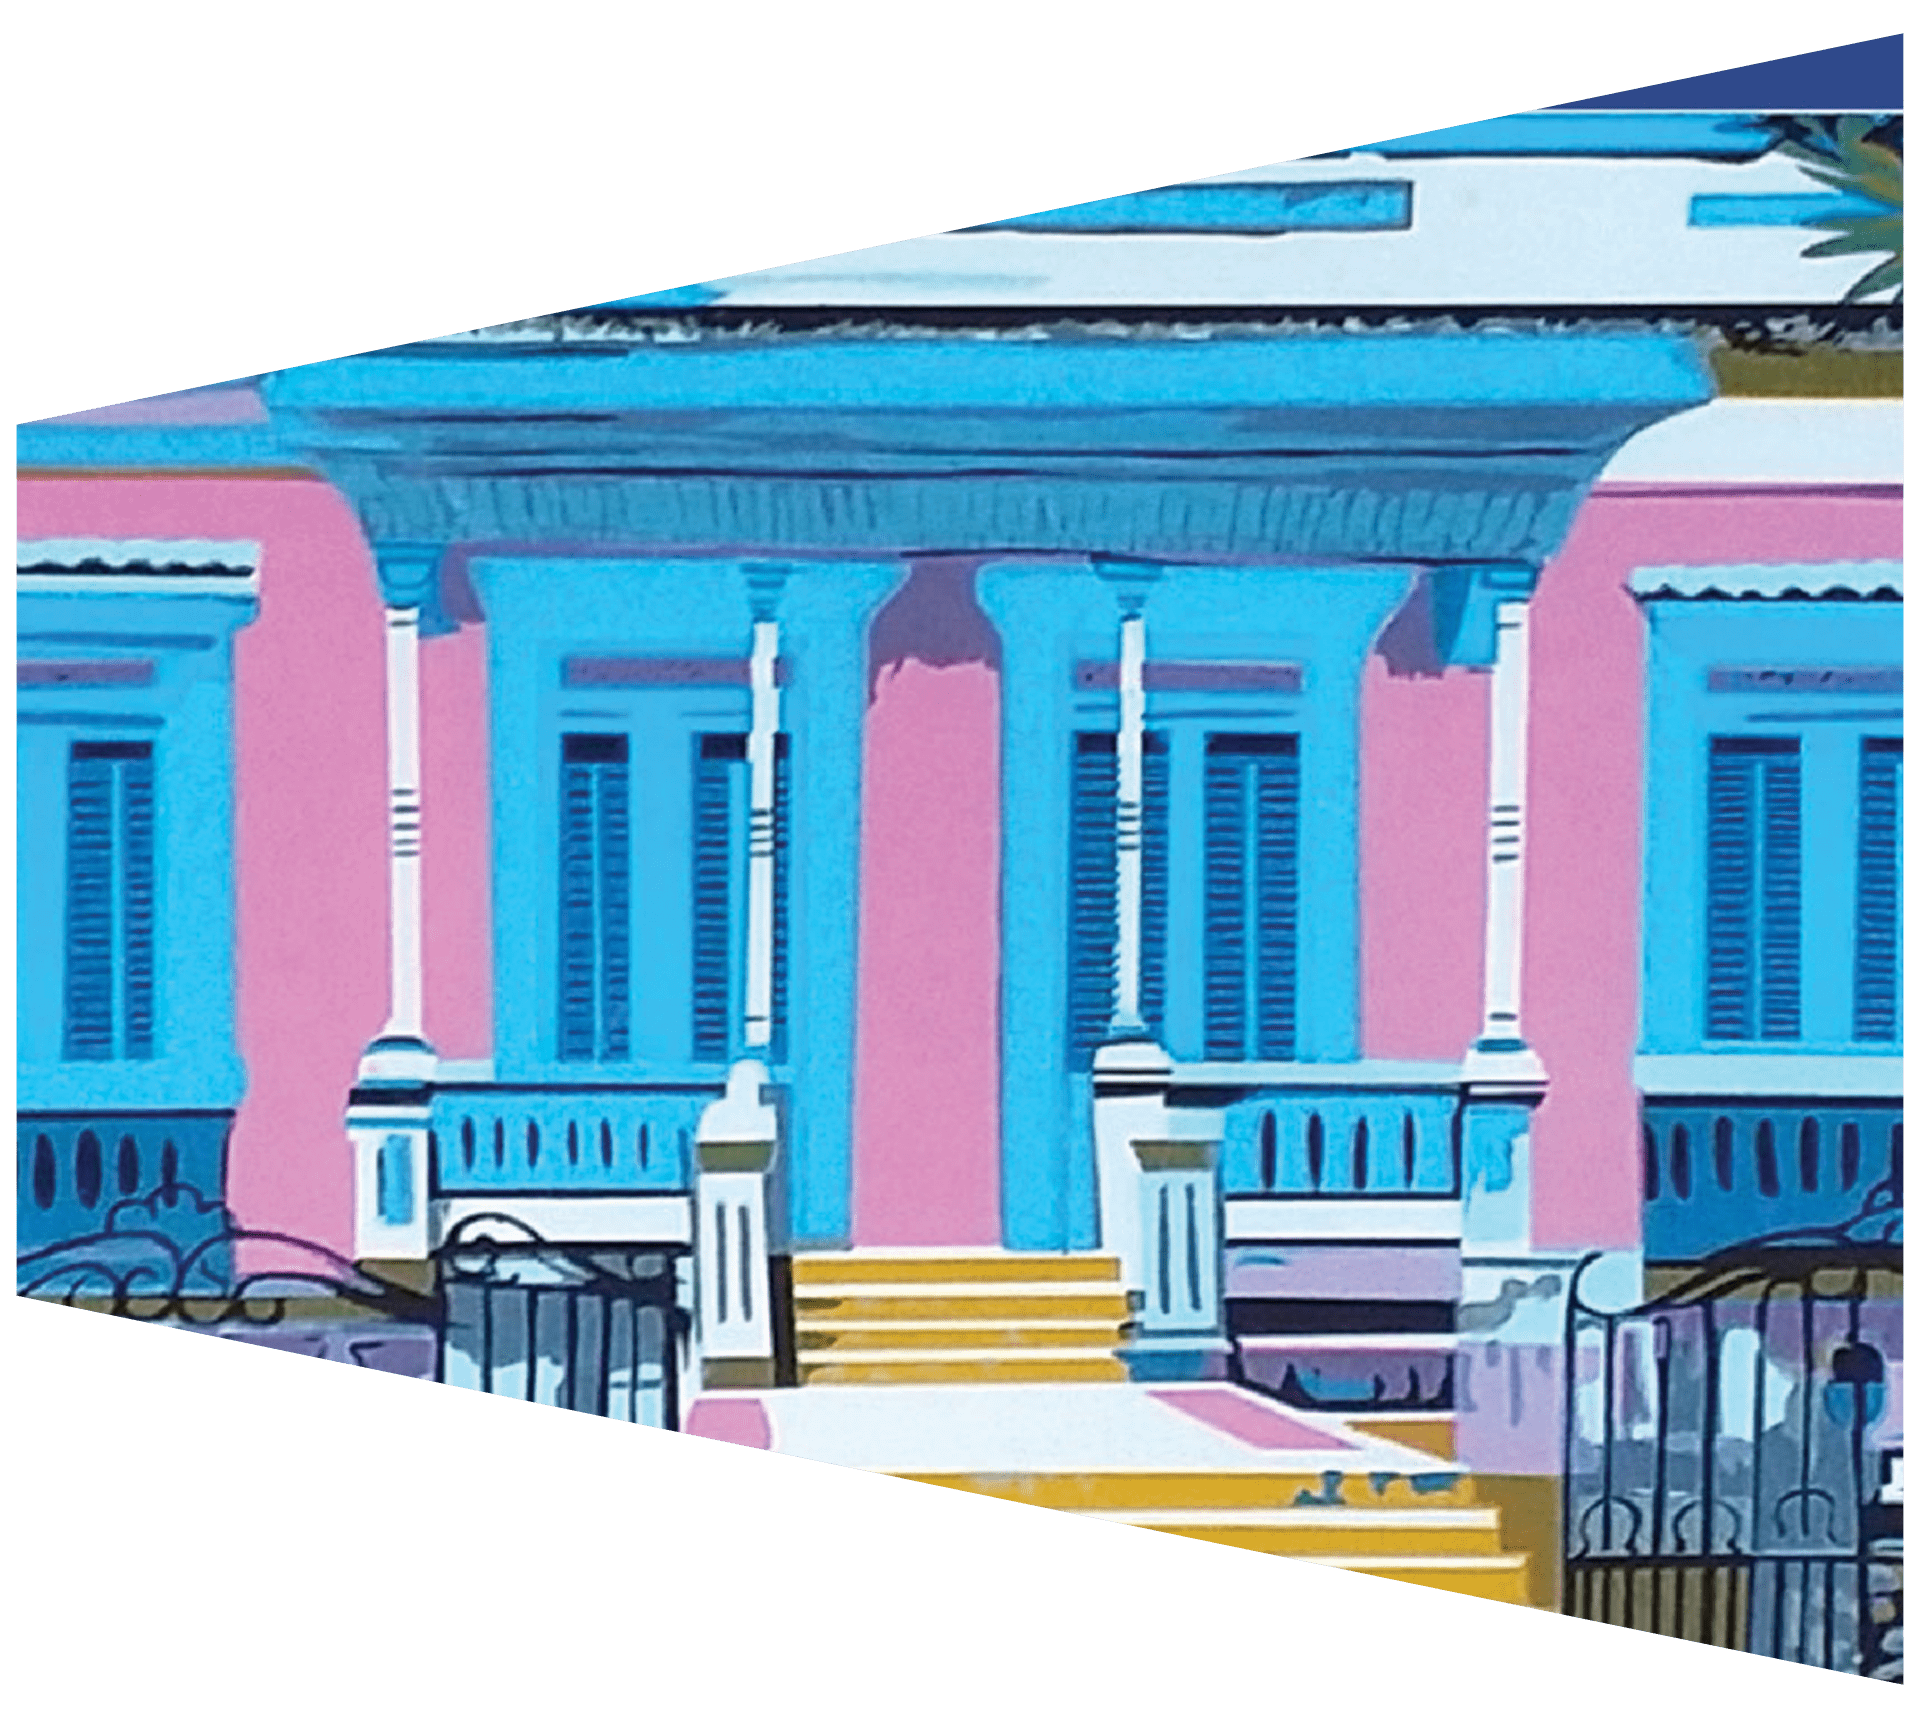 Cafecito Con… Casa Pueblo: A Puerto Rican Model of Self Reliance